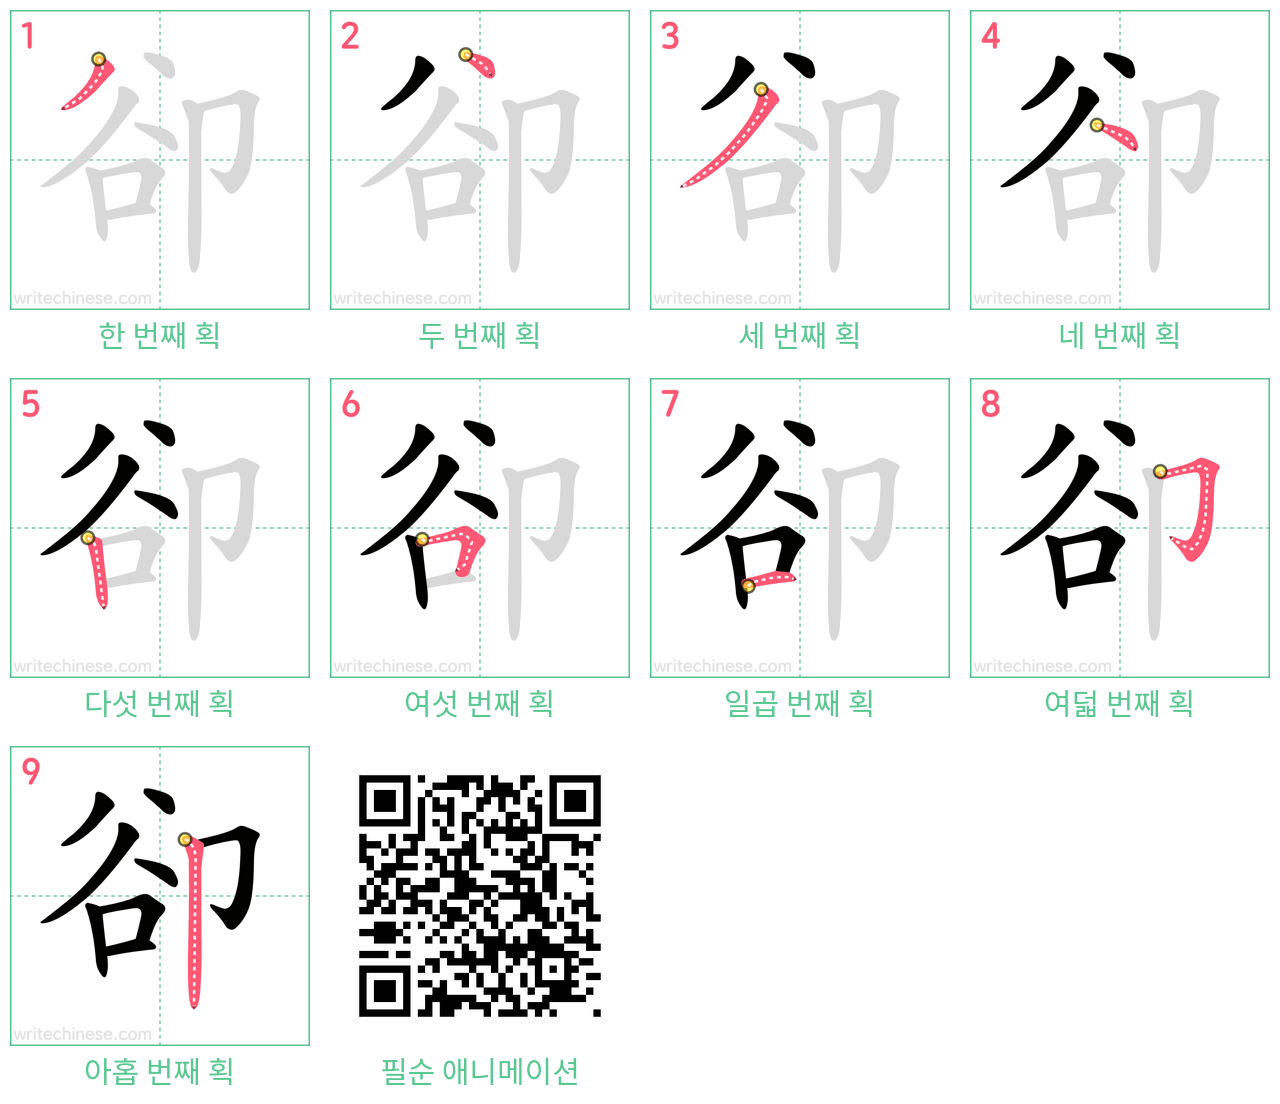 卻 step-by-step stroke order diagrams